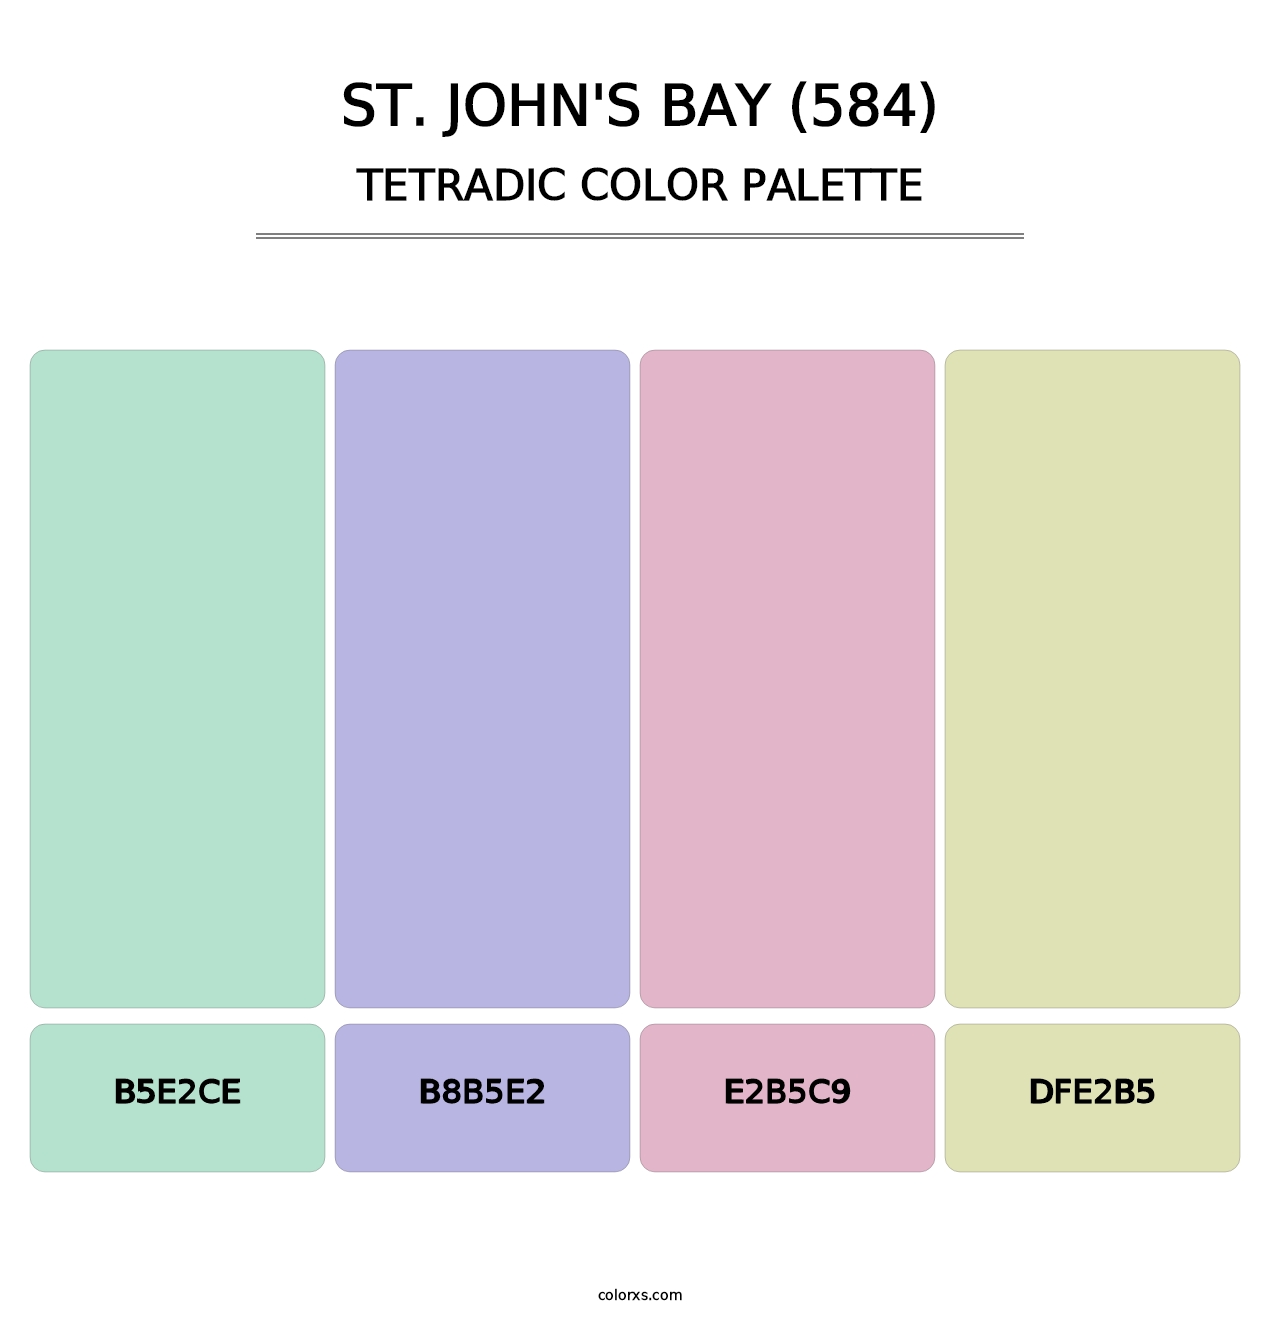 St. John's Bay (584) - Tetradic Color Palette